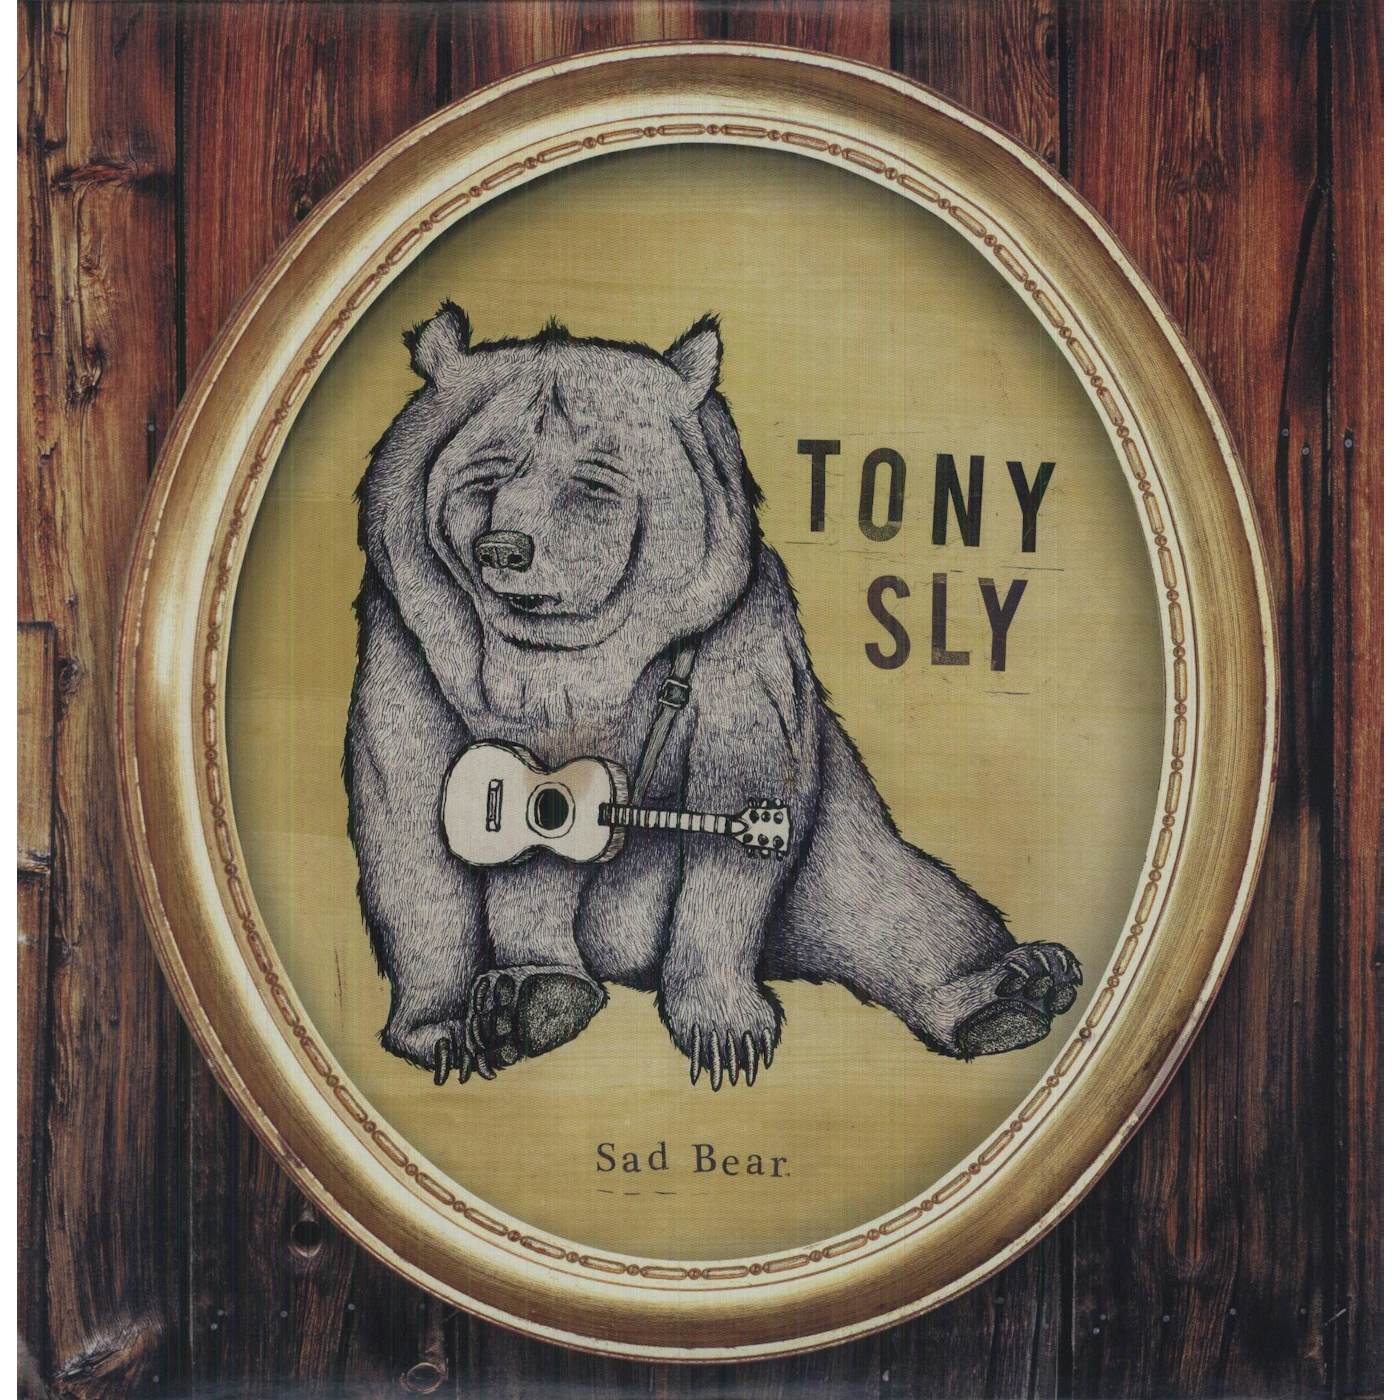 Tony Sly Sad Bear Vinyl Record